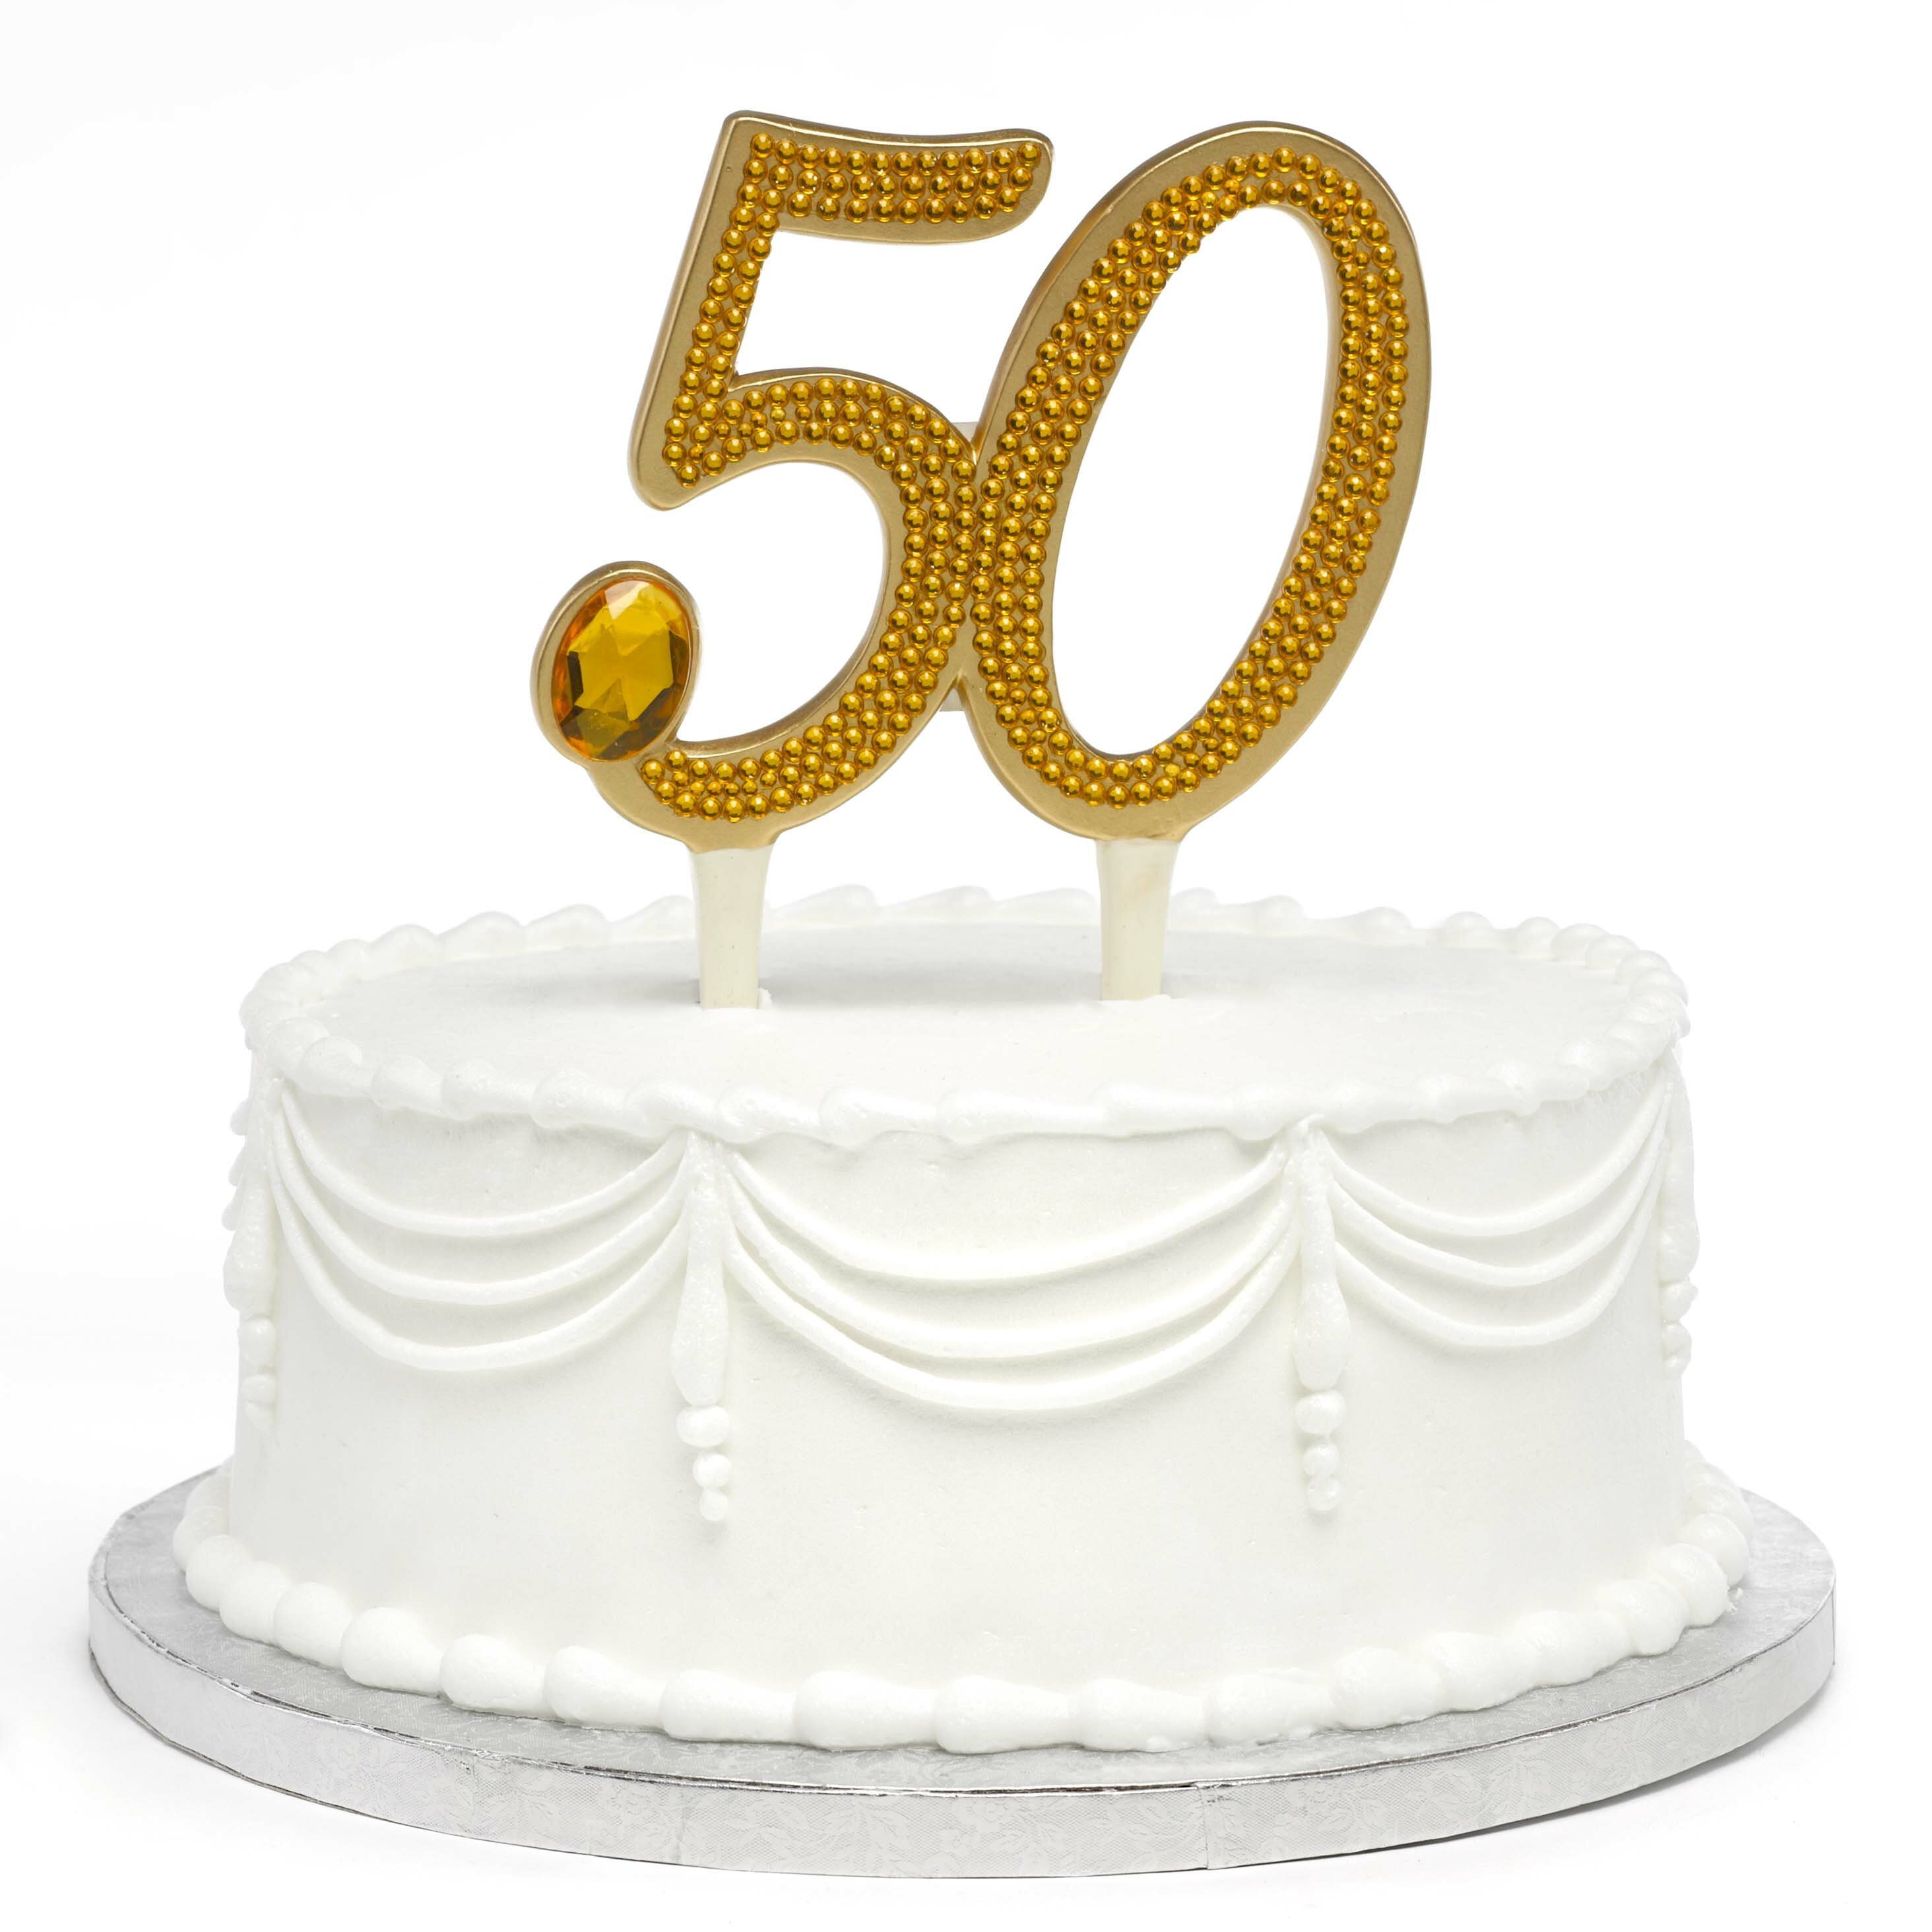 50th Anniversary cake - Three Sweeties